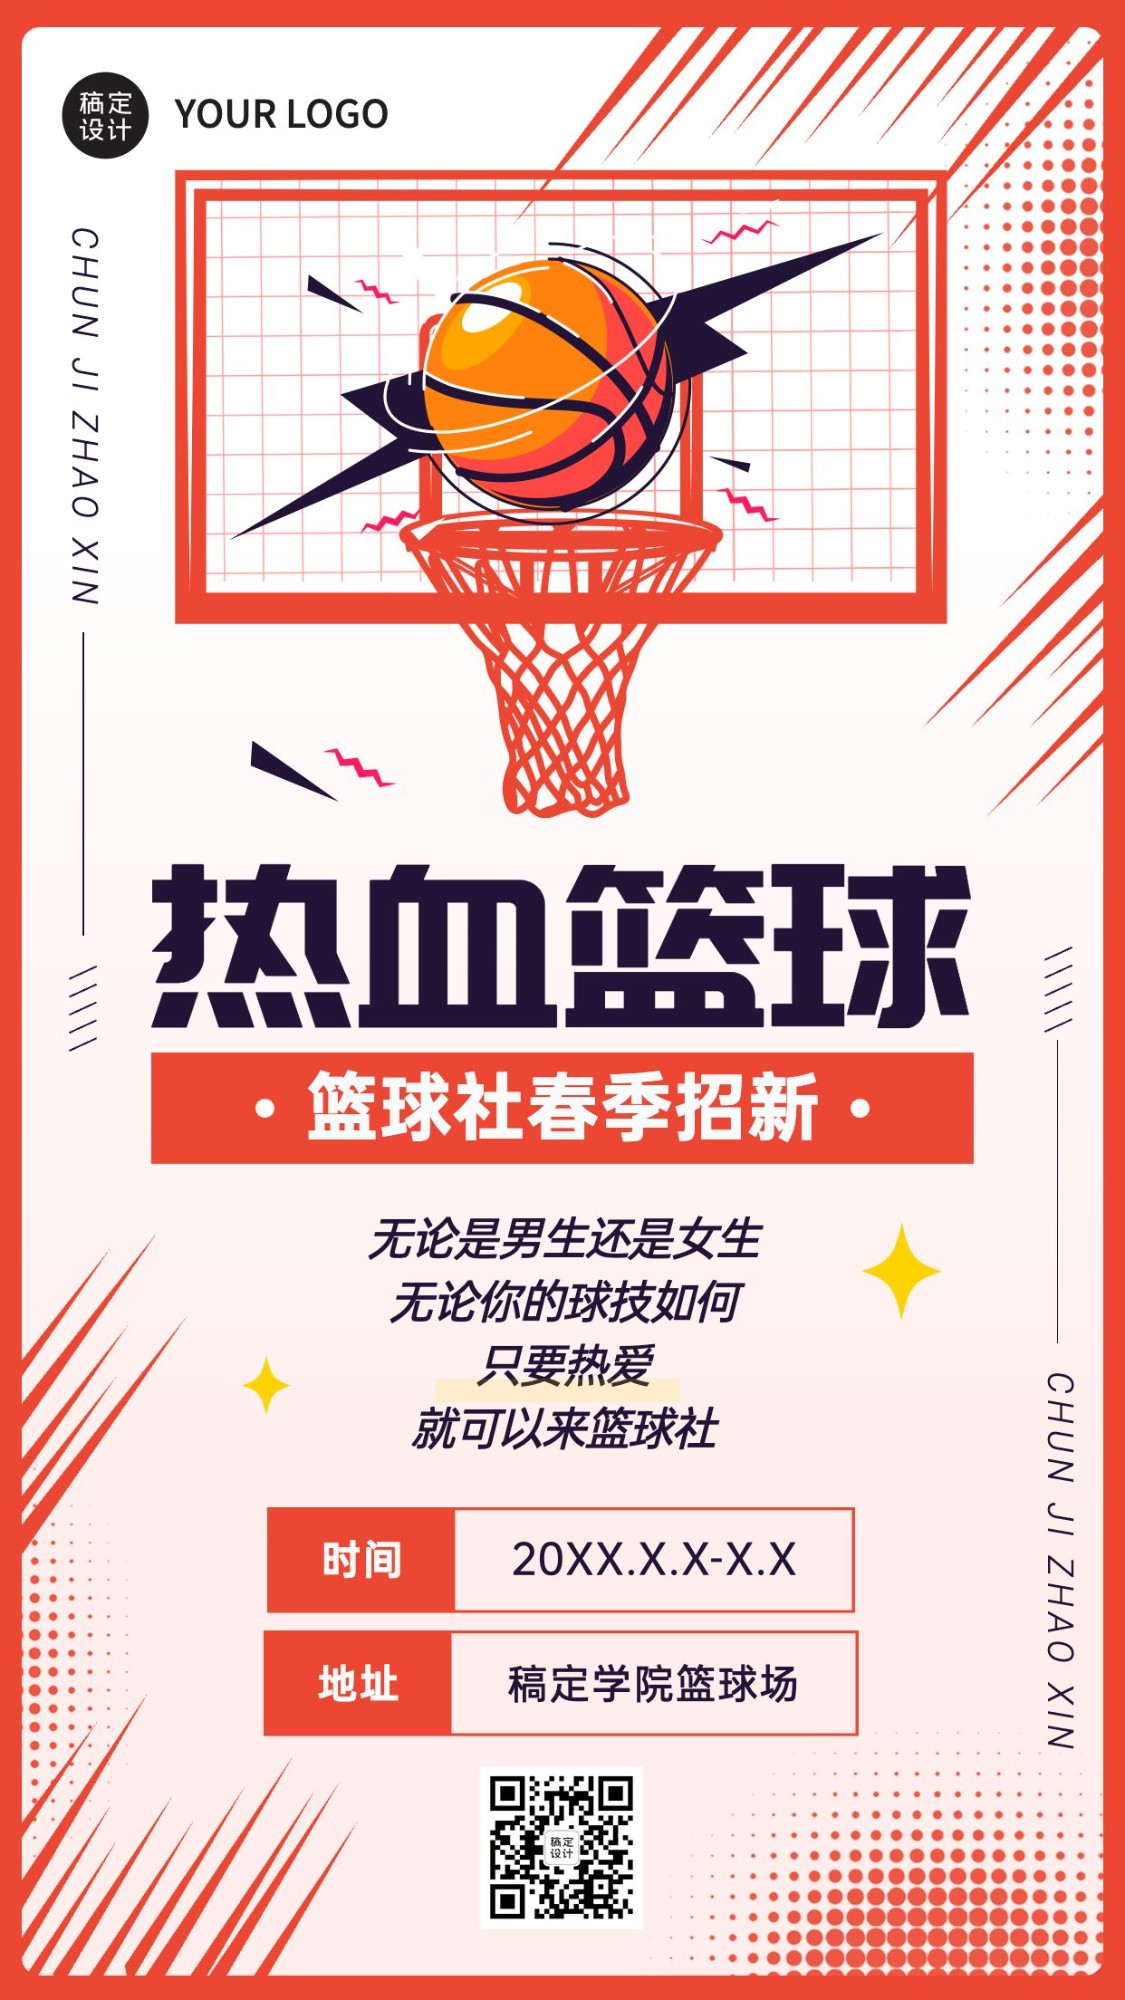 篮球协会社团招新纳新海报预览效果